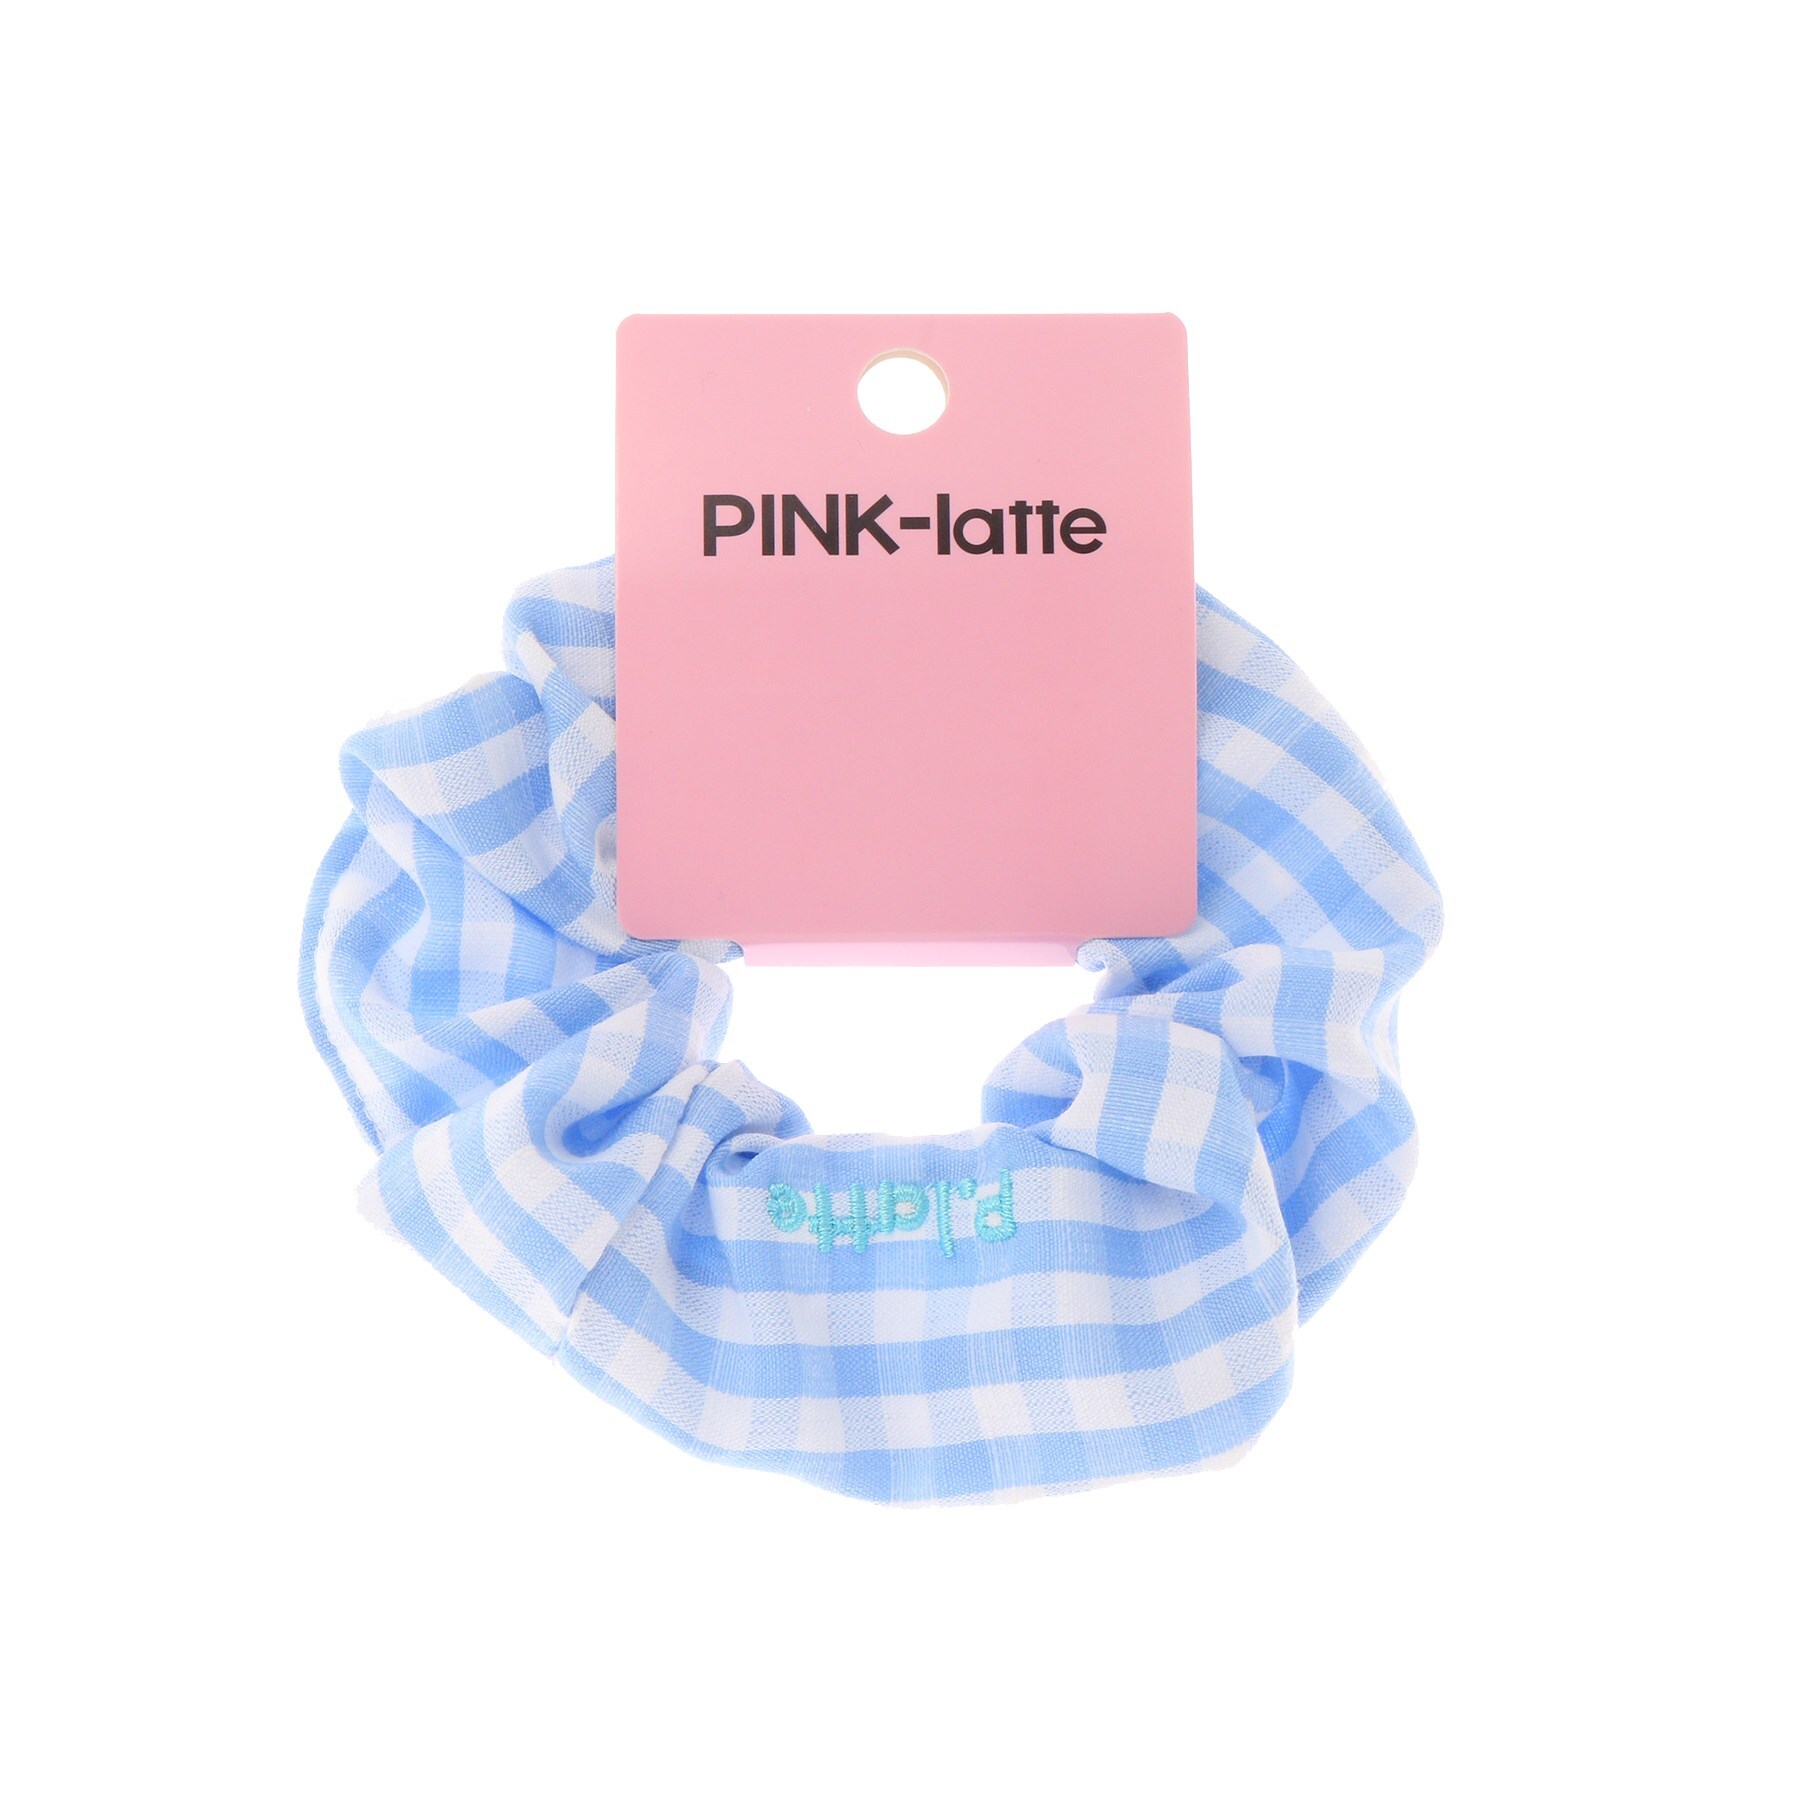 ピンク ラテ(PINK-latte)のギンガムシュシュ ライトブルー(291)